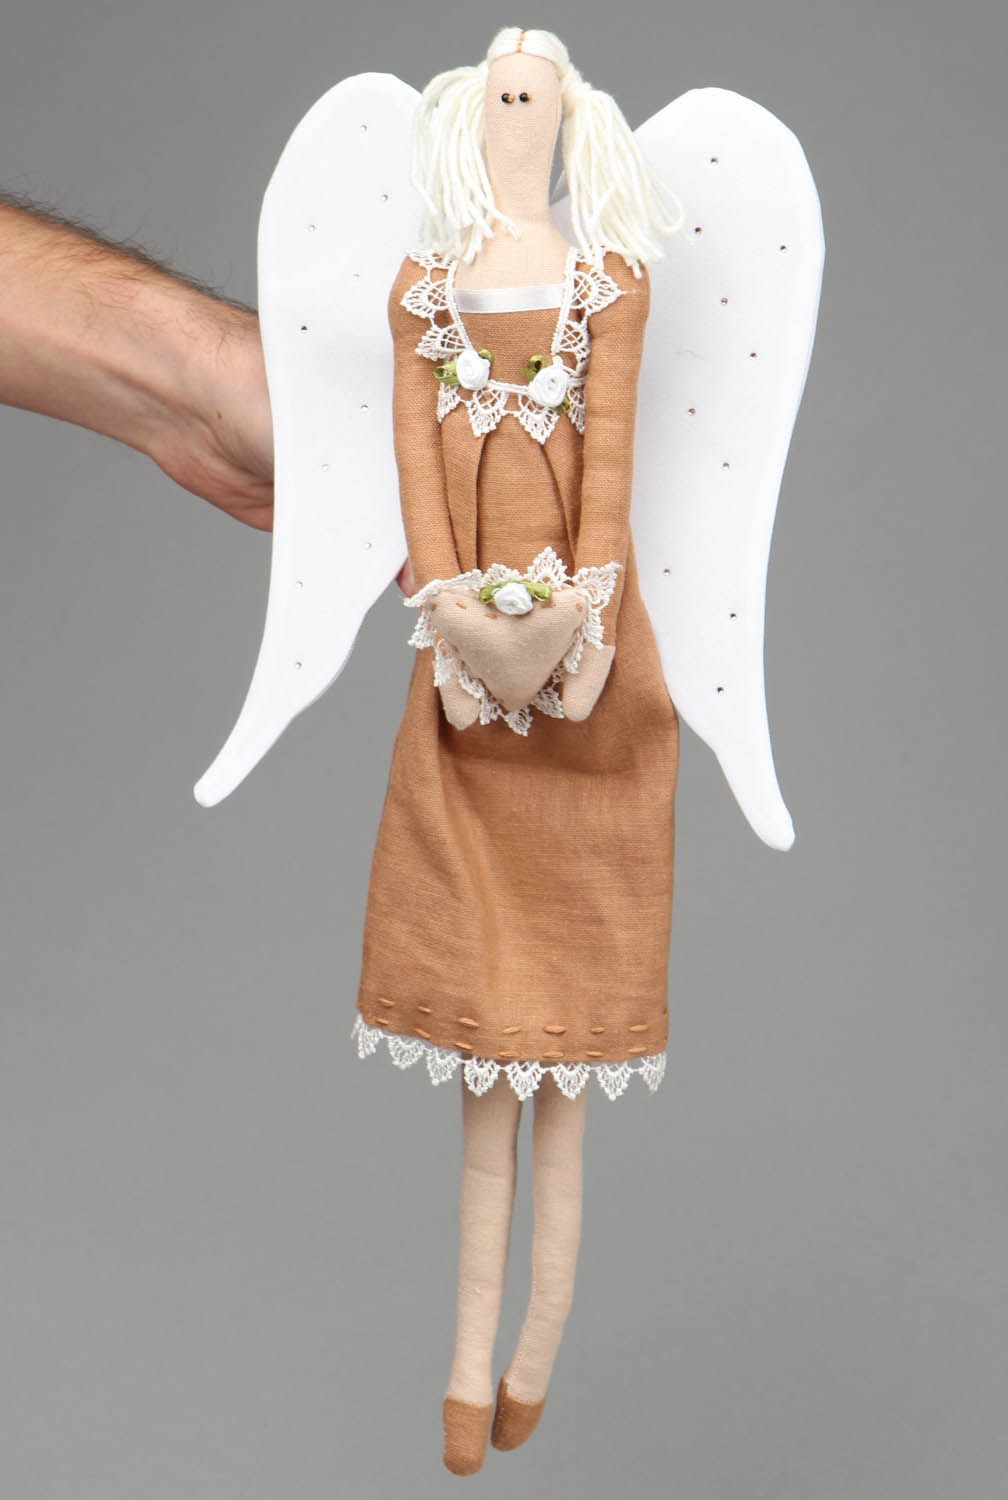 Puppe aus Leinen in Form vom Engel foto 4